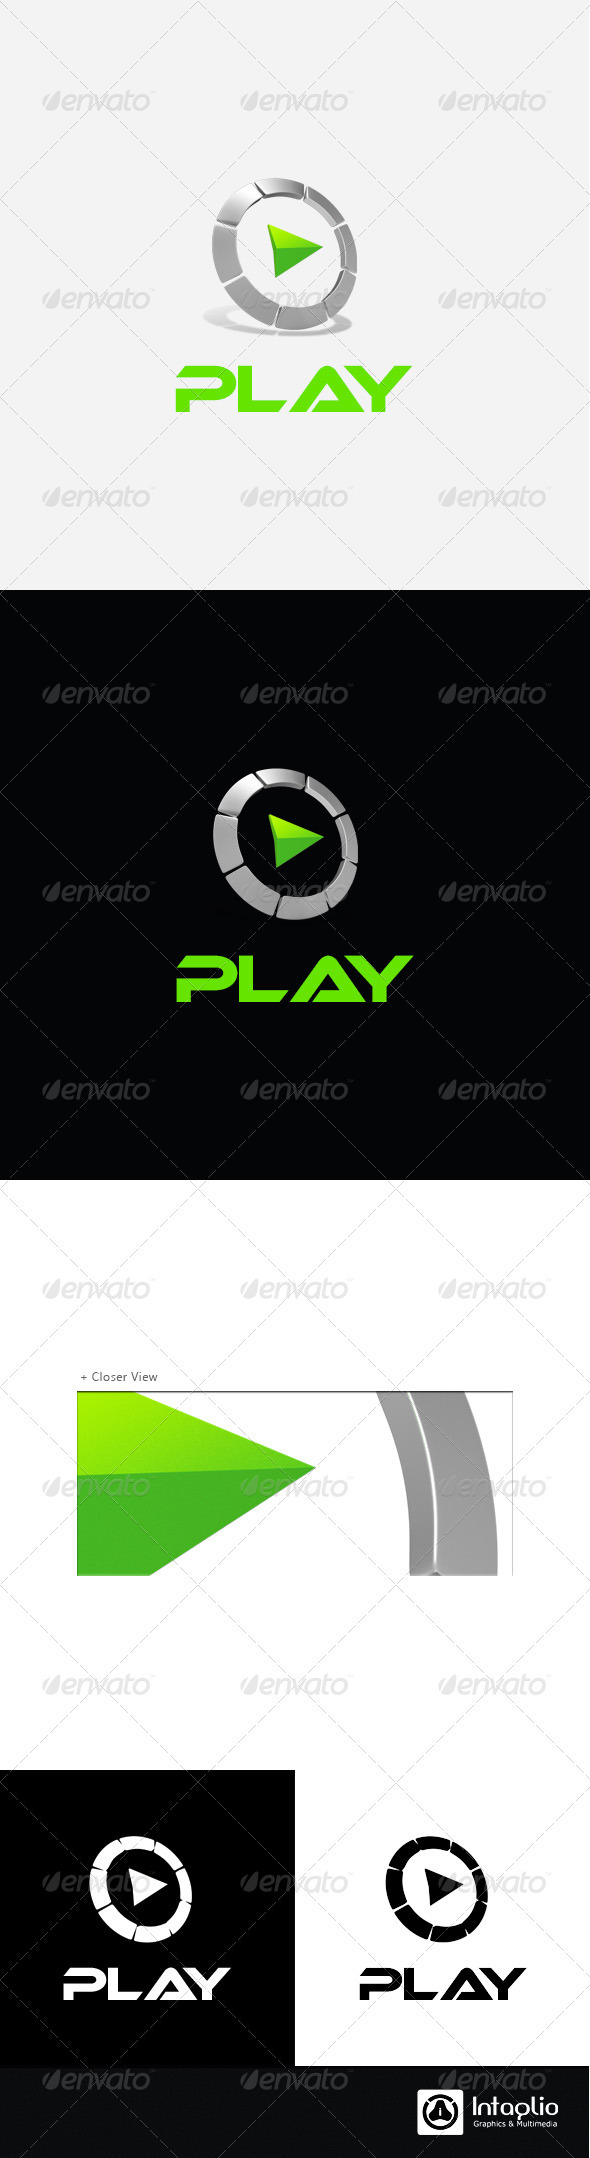 Gaming / Multimedia Logo - Play